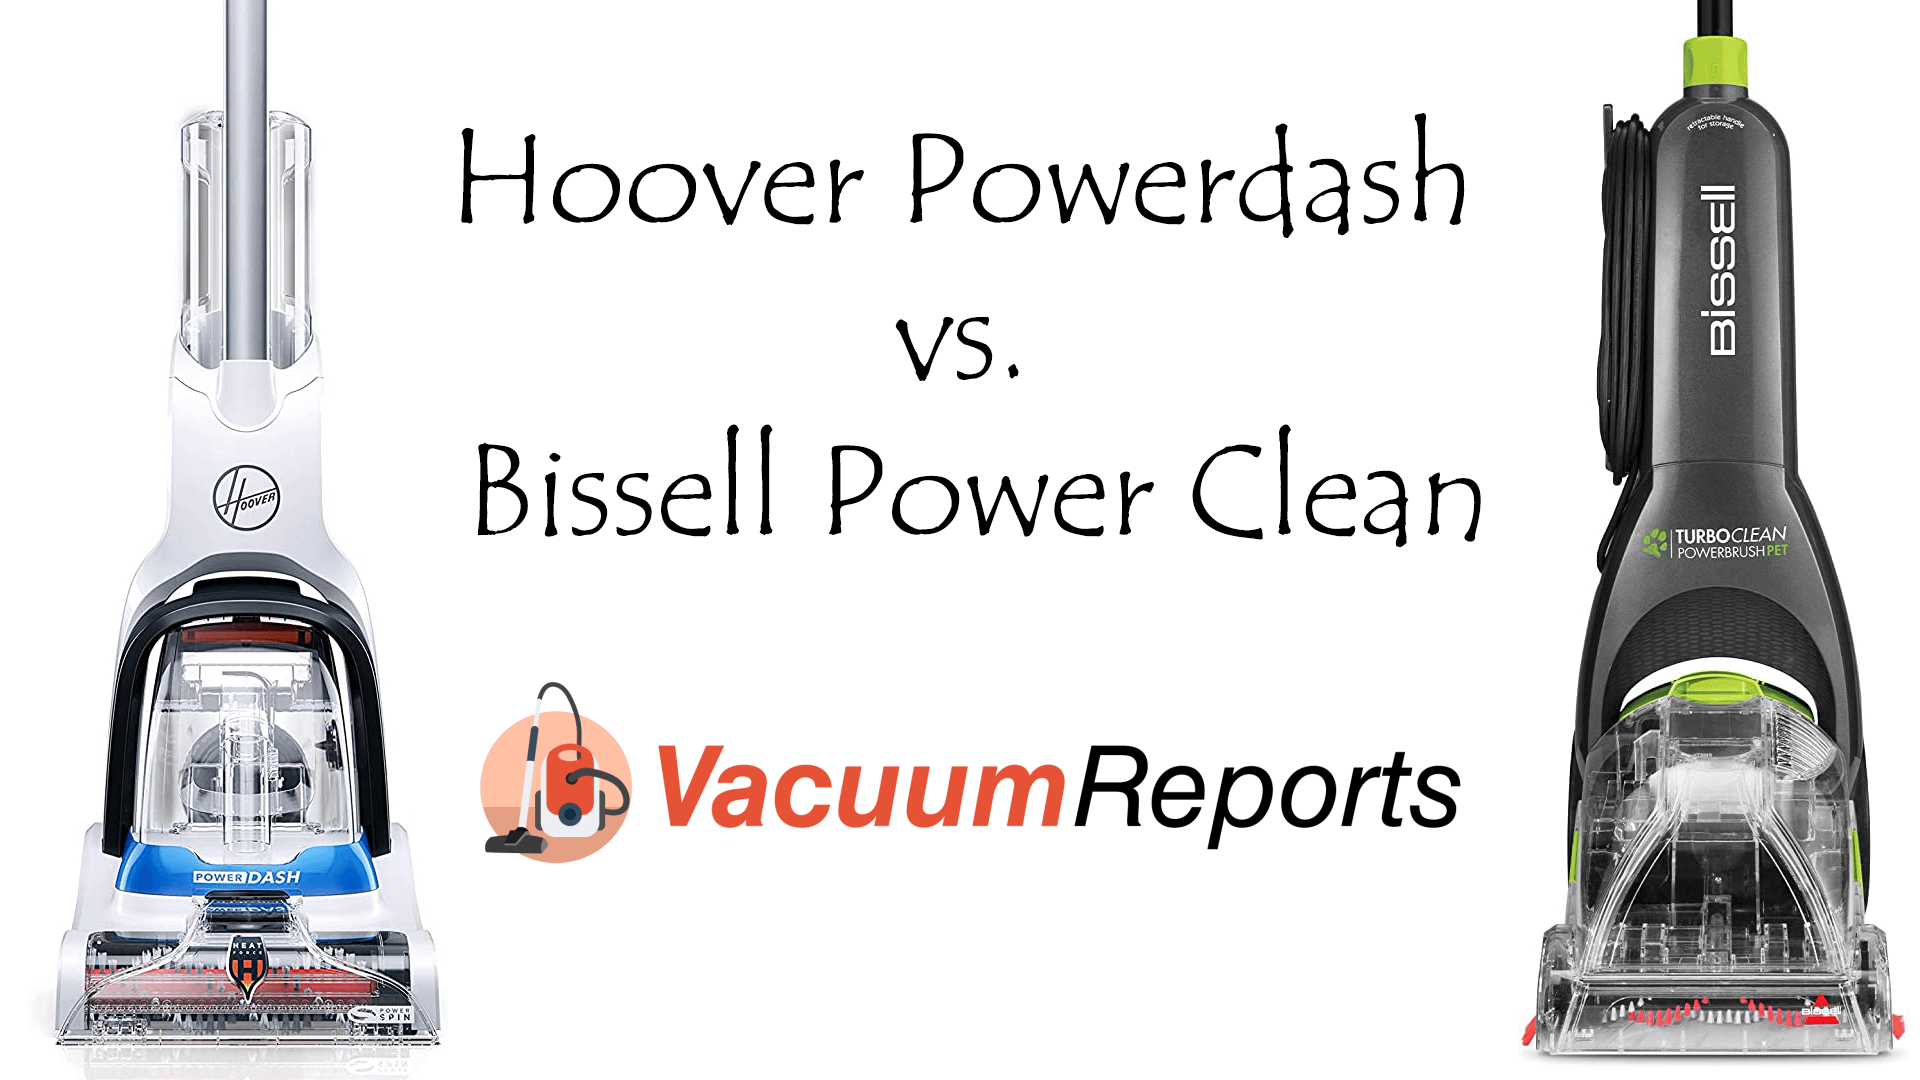 Hoover Powerdash vs. Bissell Power Clean